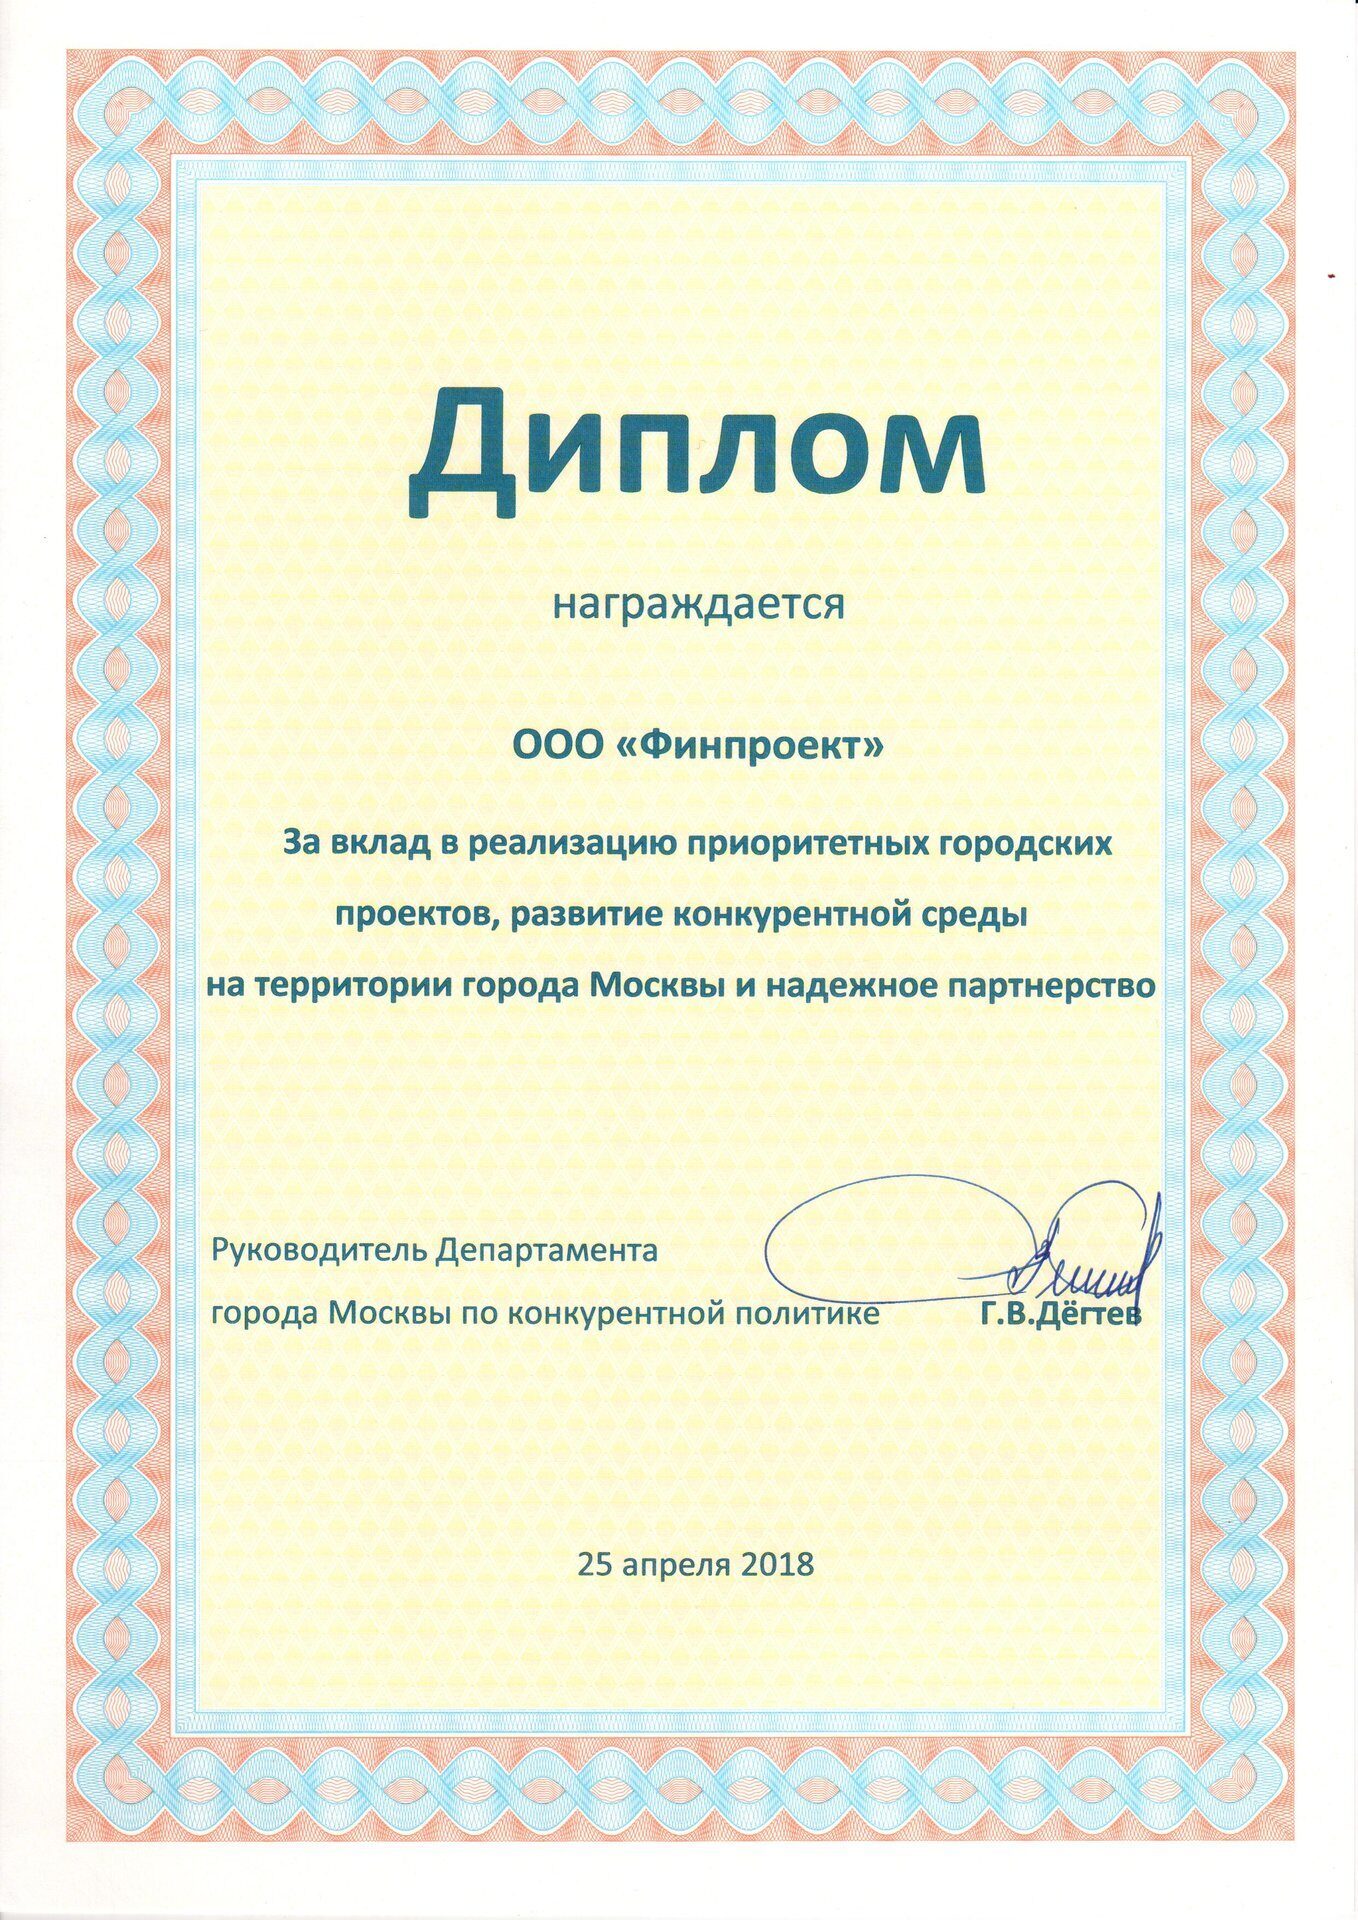 Диплом Департамента Конкурентной Политики г. Москвы